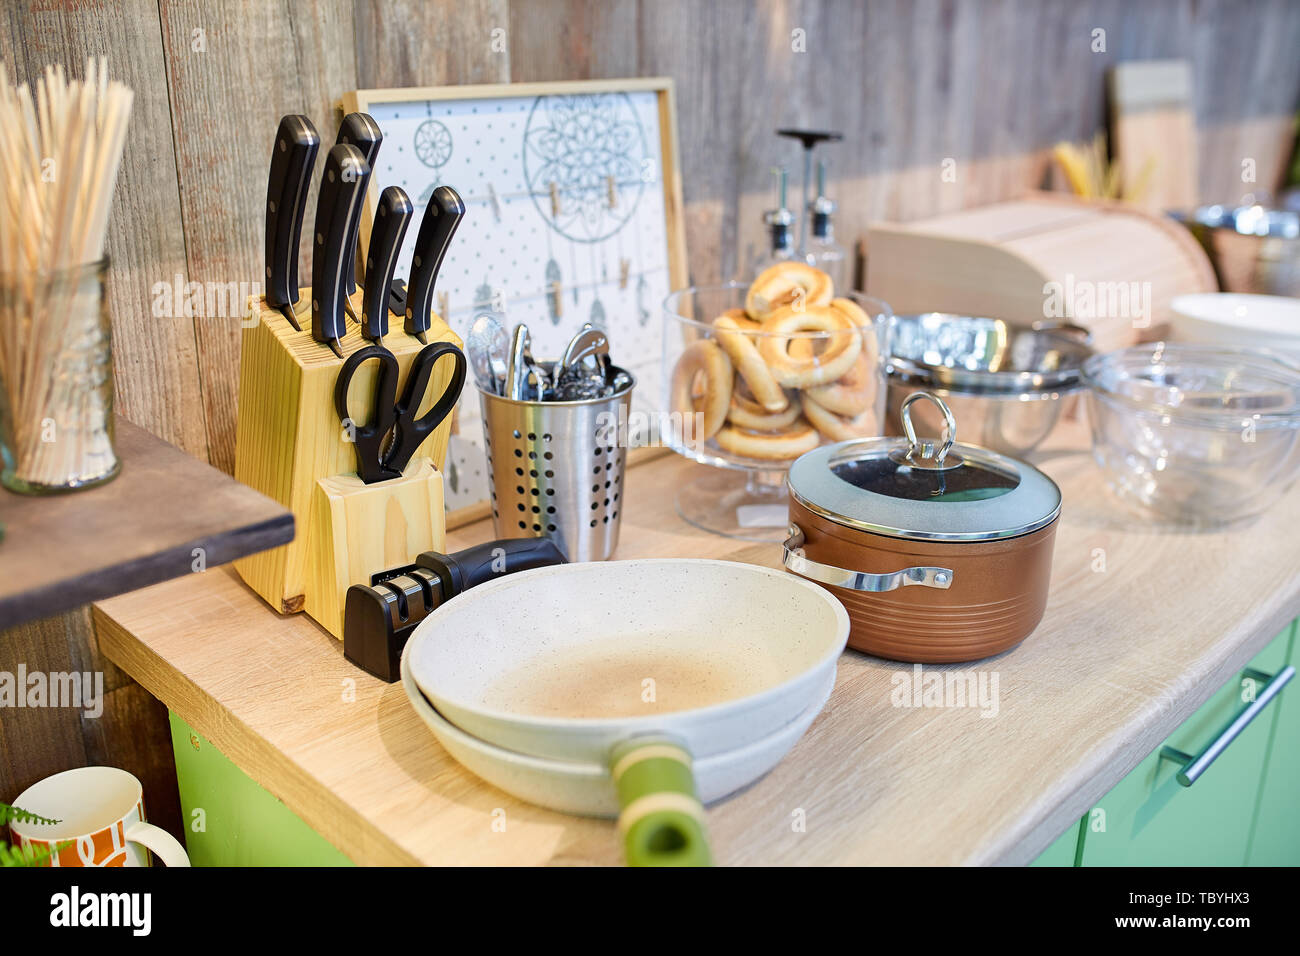 https://c8.alamy.com/compes/tbyhx3/utensilios-de-cocina-en-la-mesa-el-concepto-de-hogar-tbyhx3.jpg